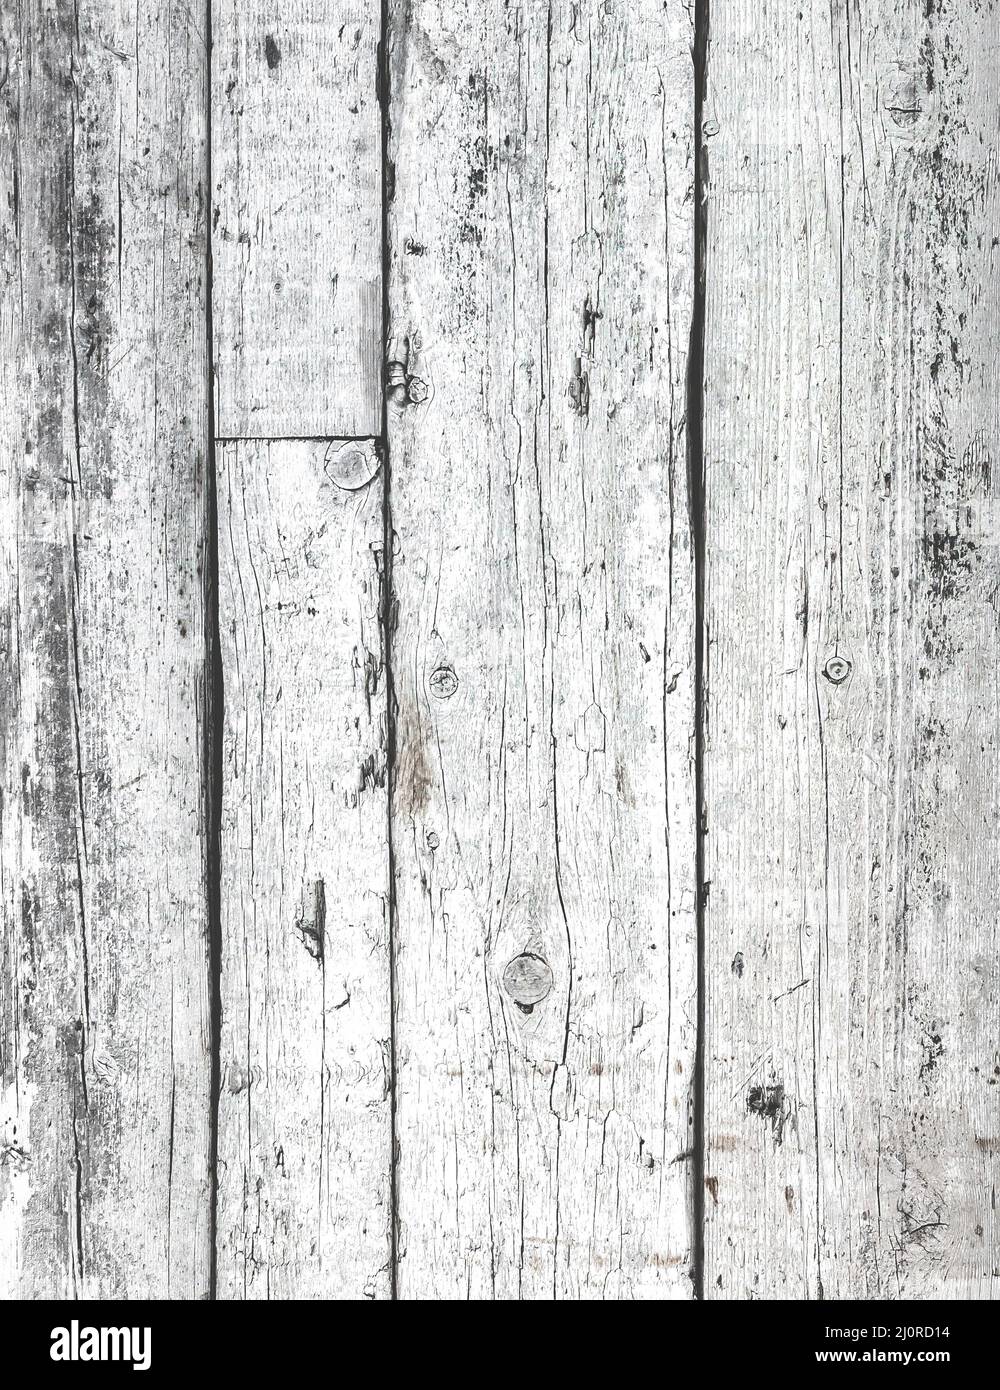 Wooden white texture Stock Photo